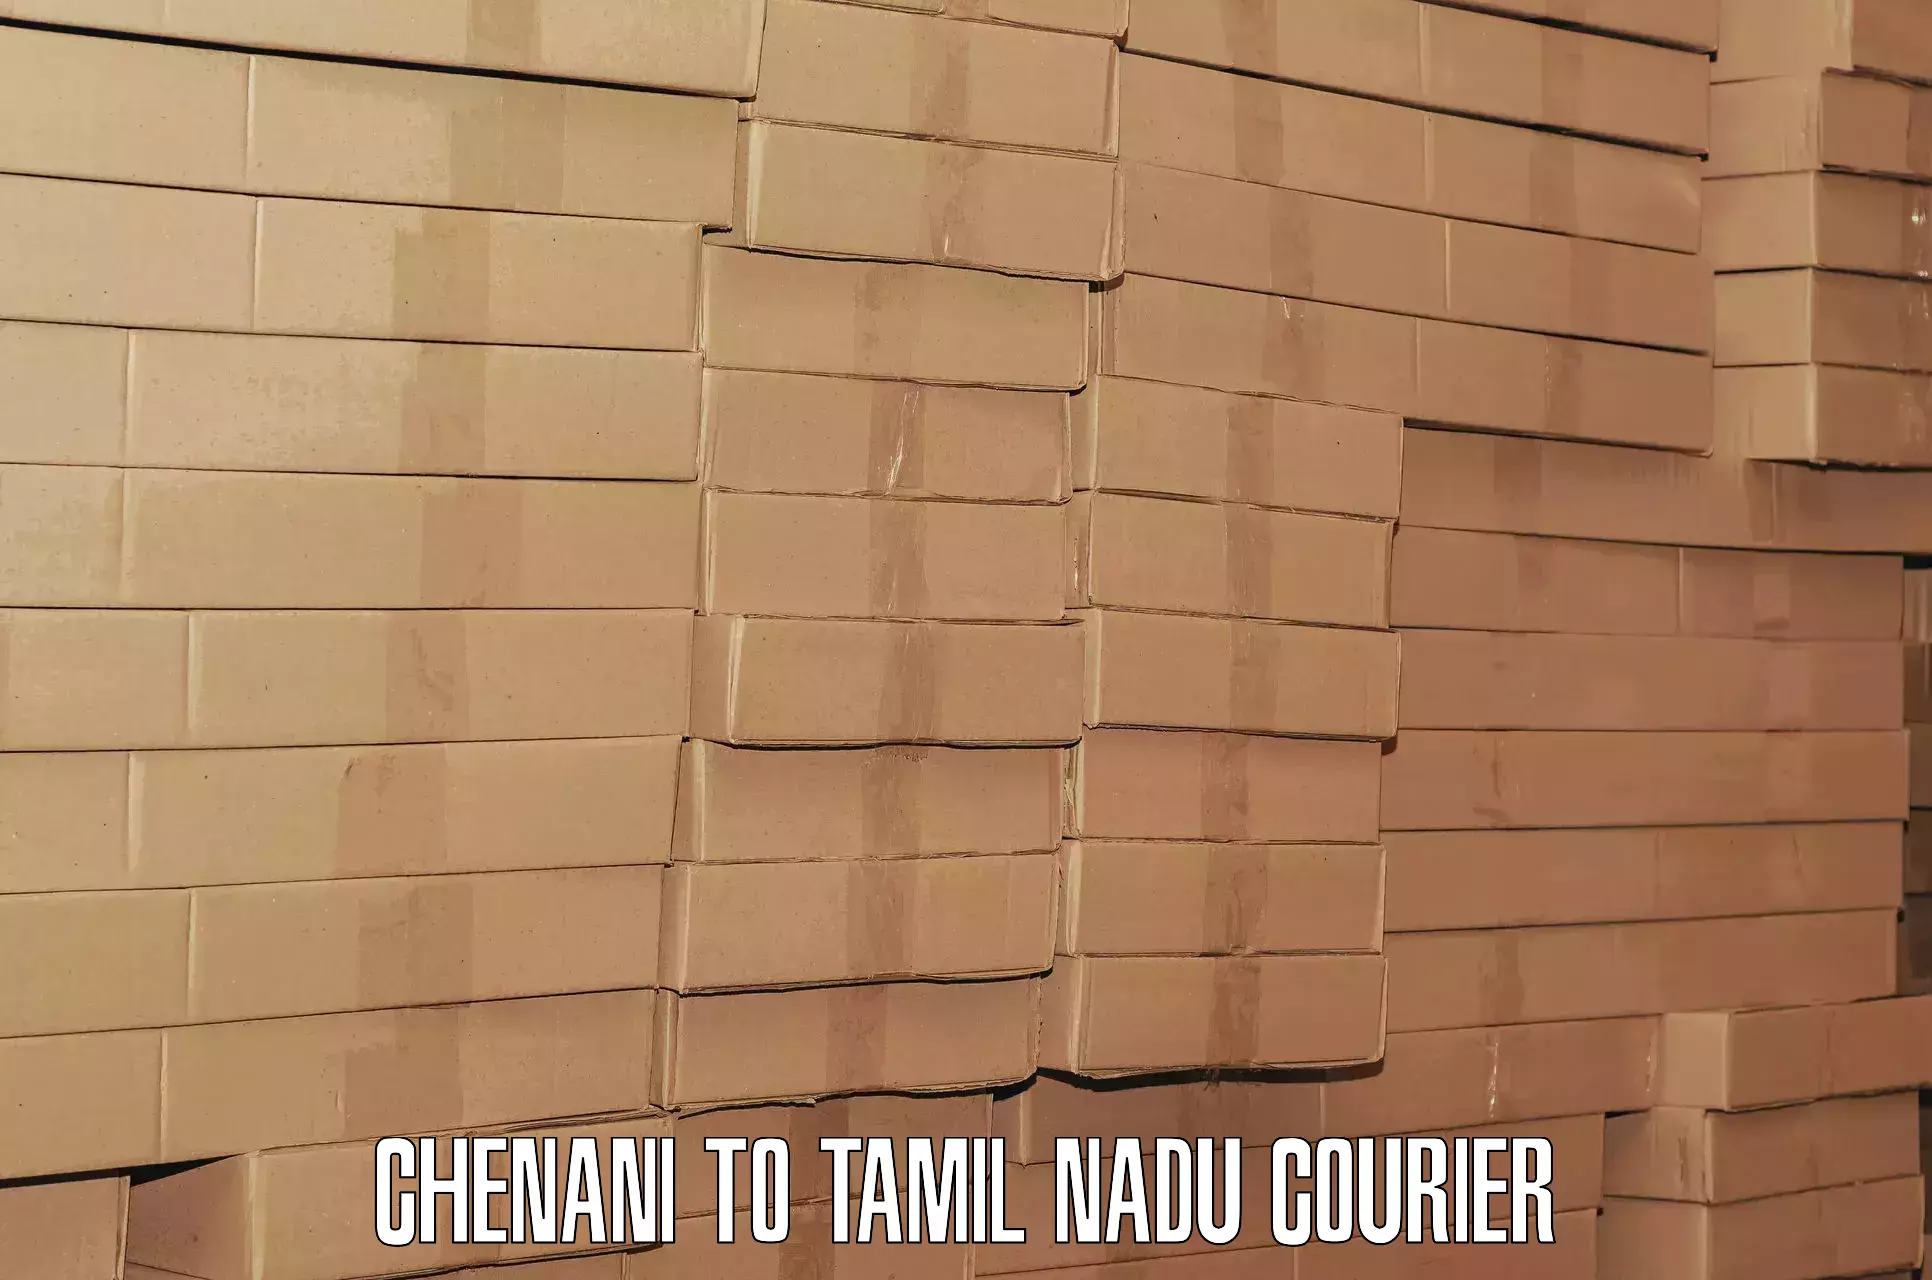 Comprehensive baggage service in Chenani to Tamil Nadu